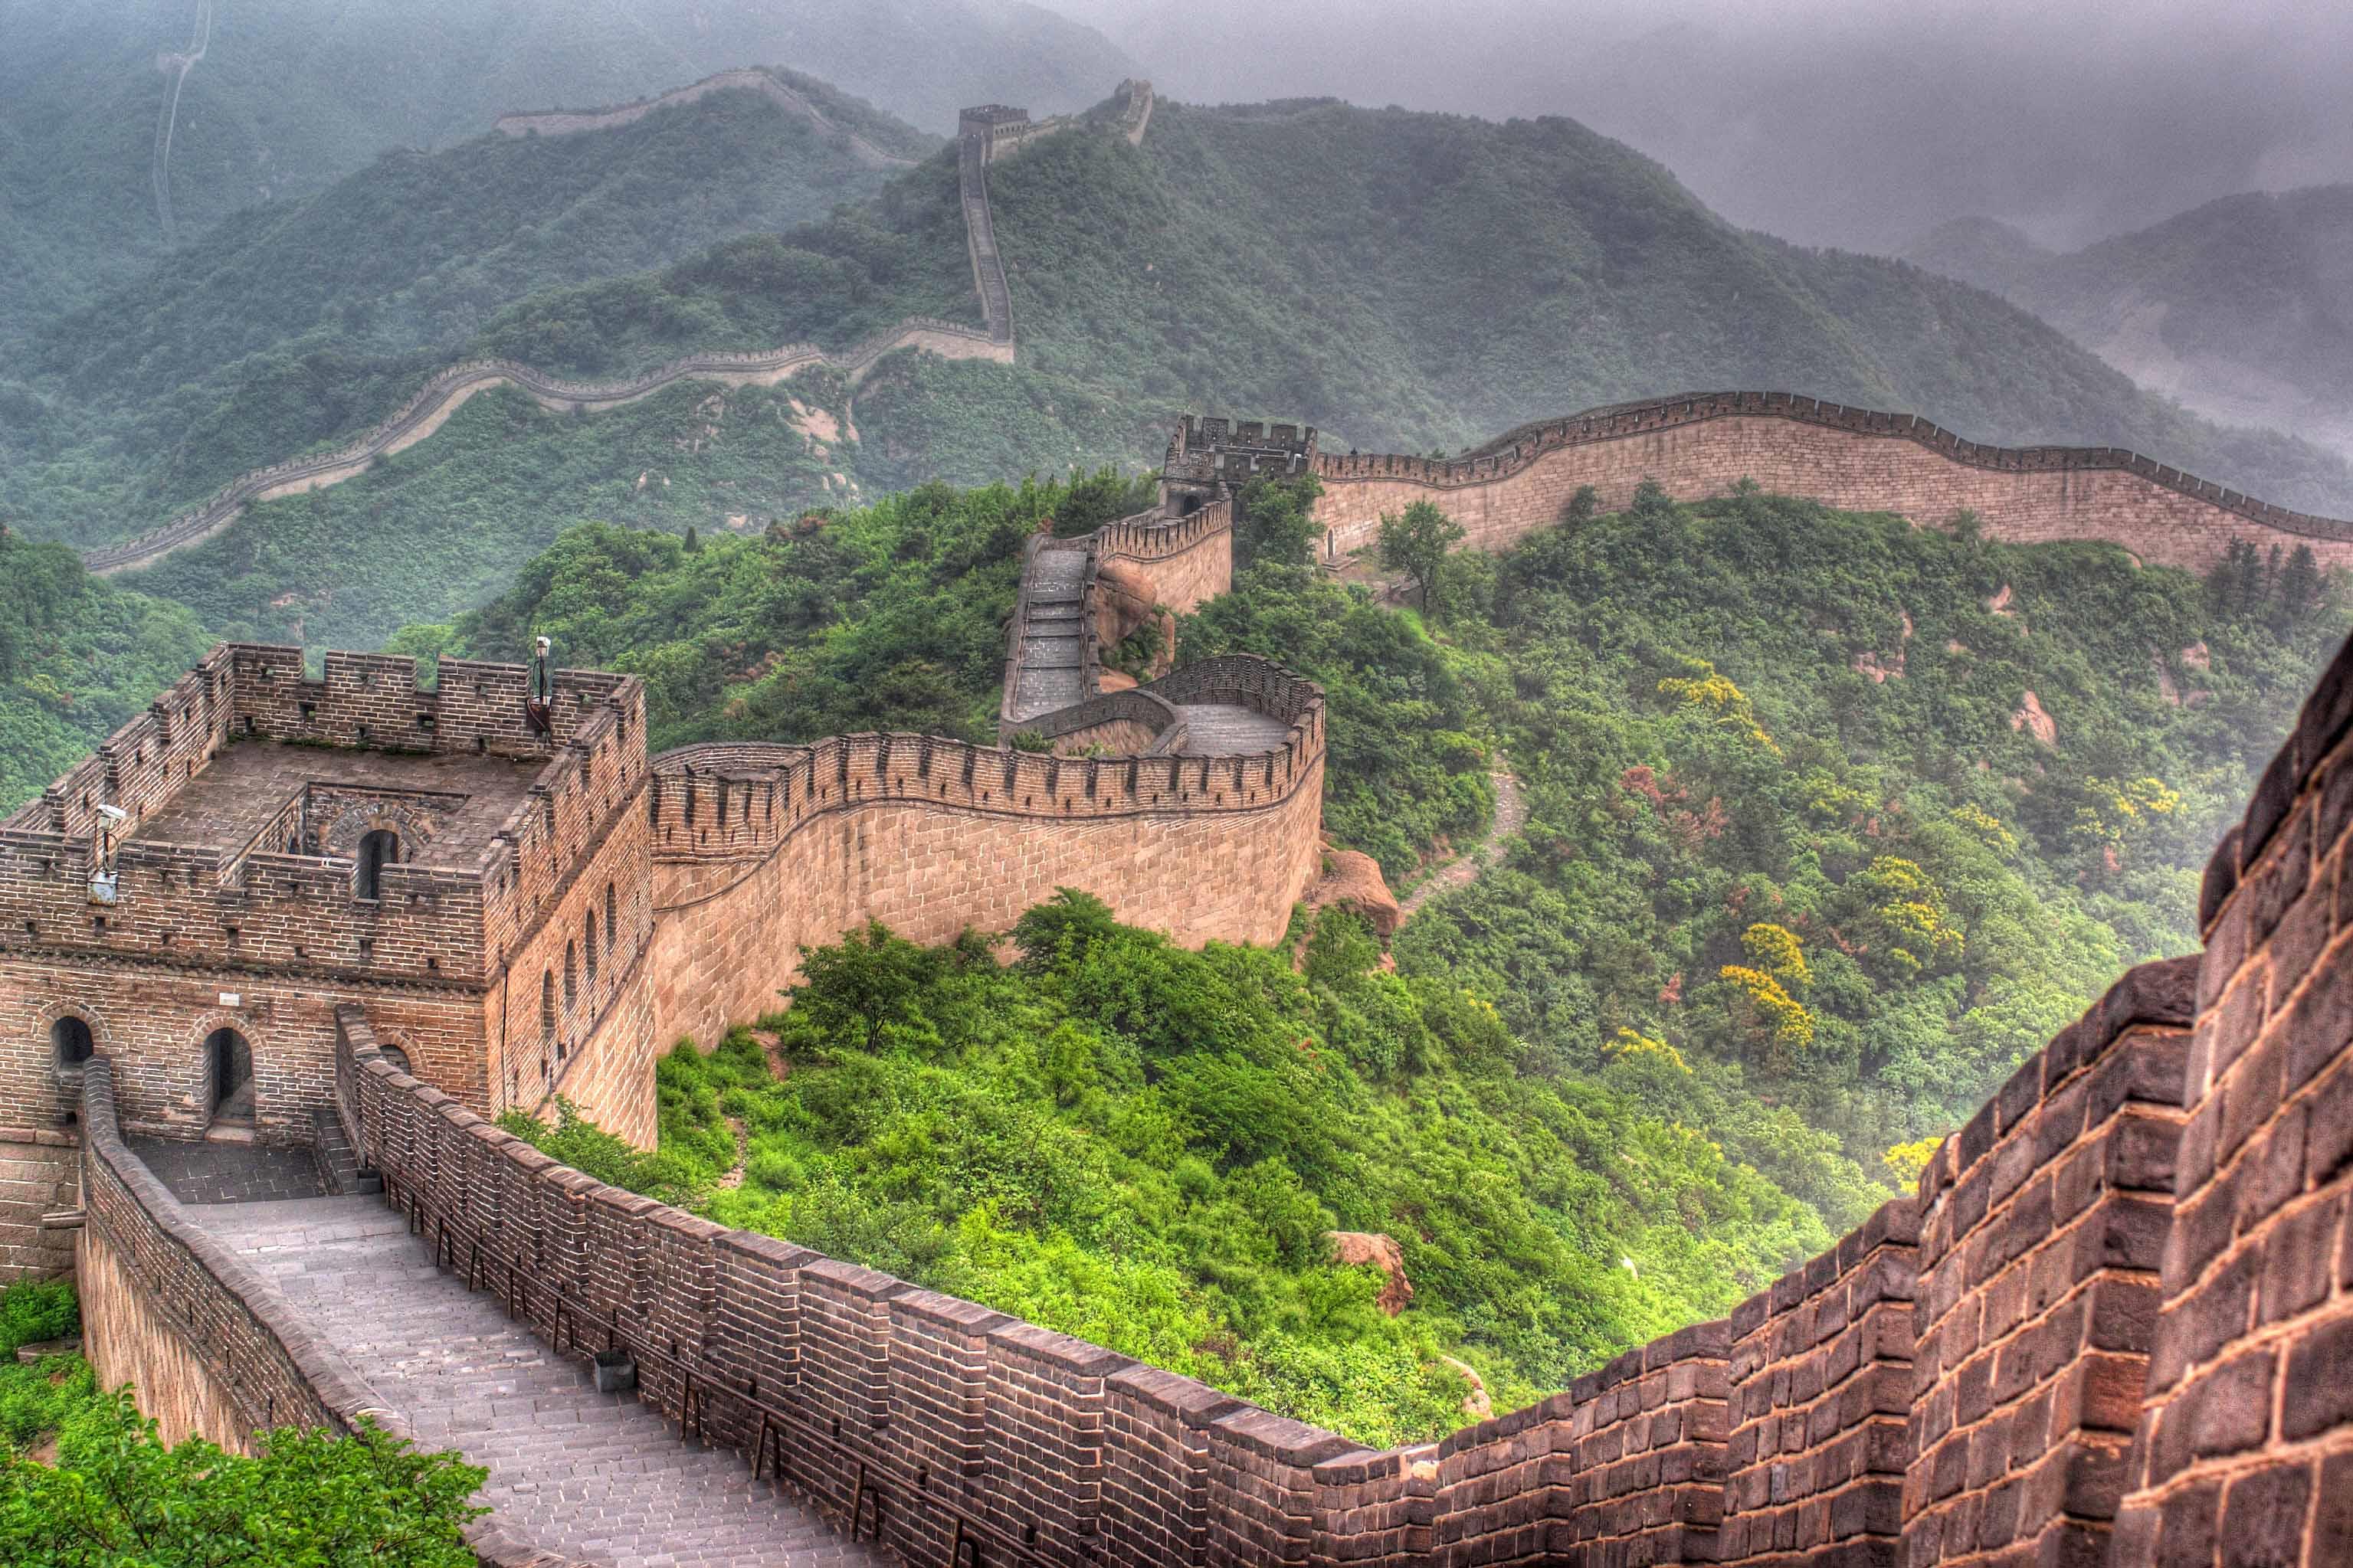 चीन की दीवार - मिट्टी और पत्थर से बनी यह एक किलेनुमा दीवार है जिसे चीन के विभिन्न शासकों द्वारा पांचवीं शताब्दी से लेकर सोलहवीं शताब्दी तक बनवाया गया।